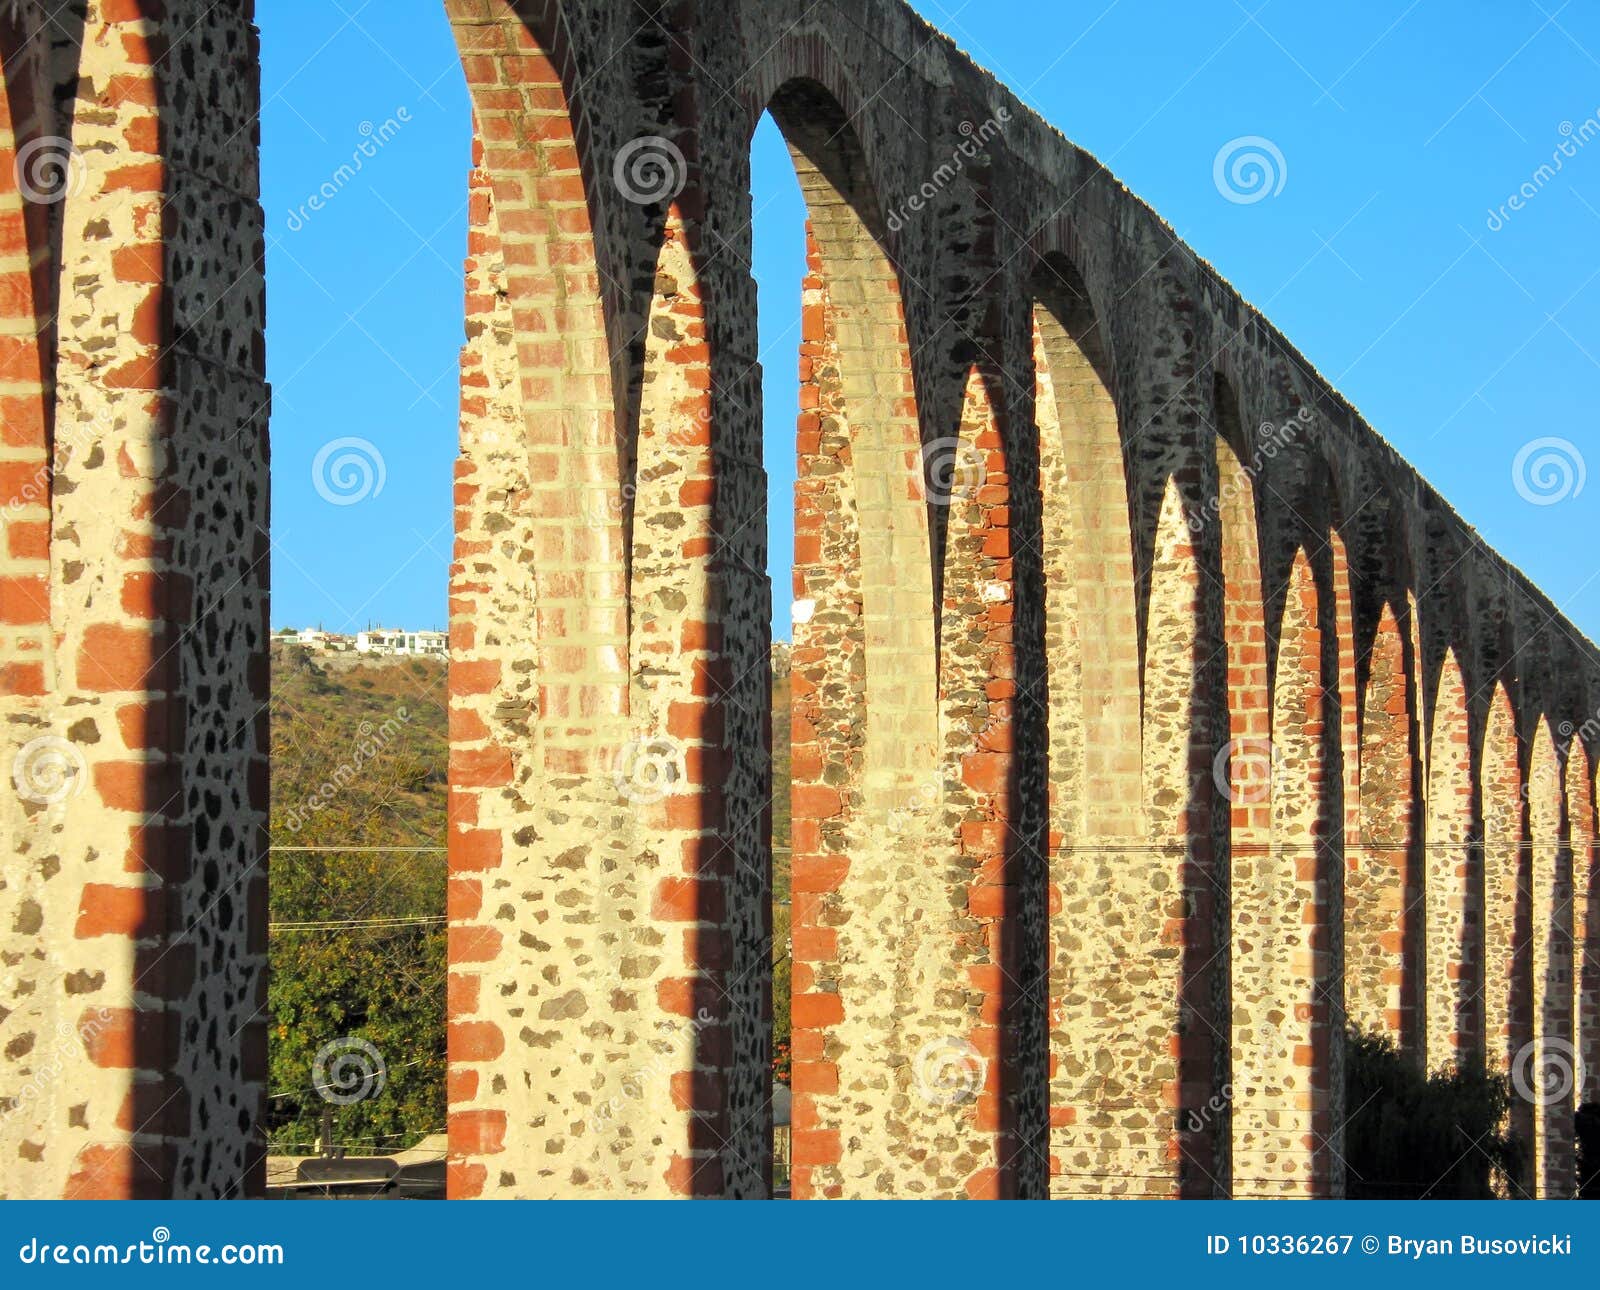 los arcos aqueduct in queretaro, mexico.